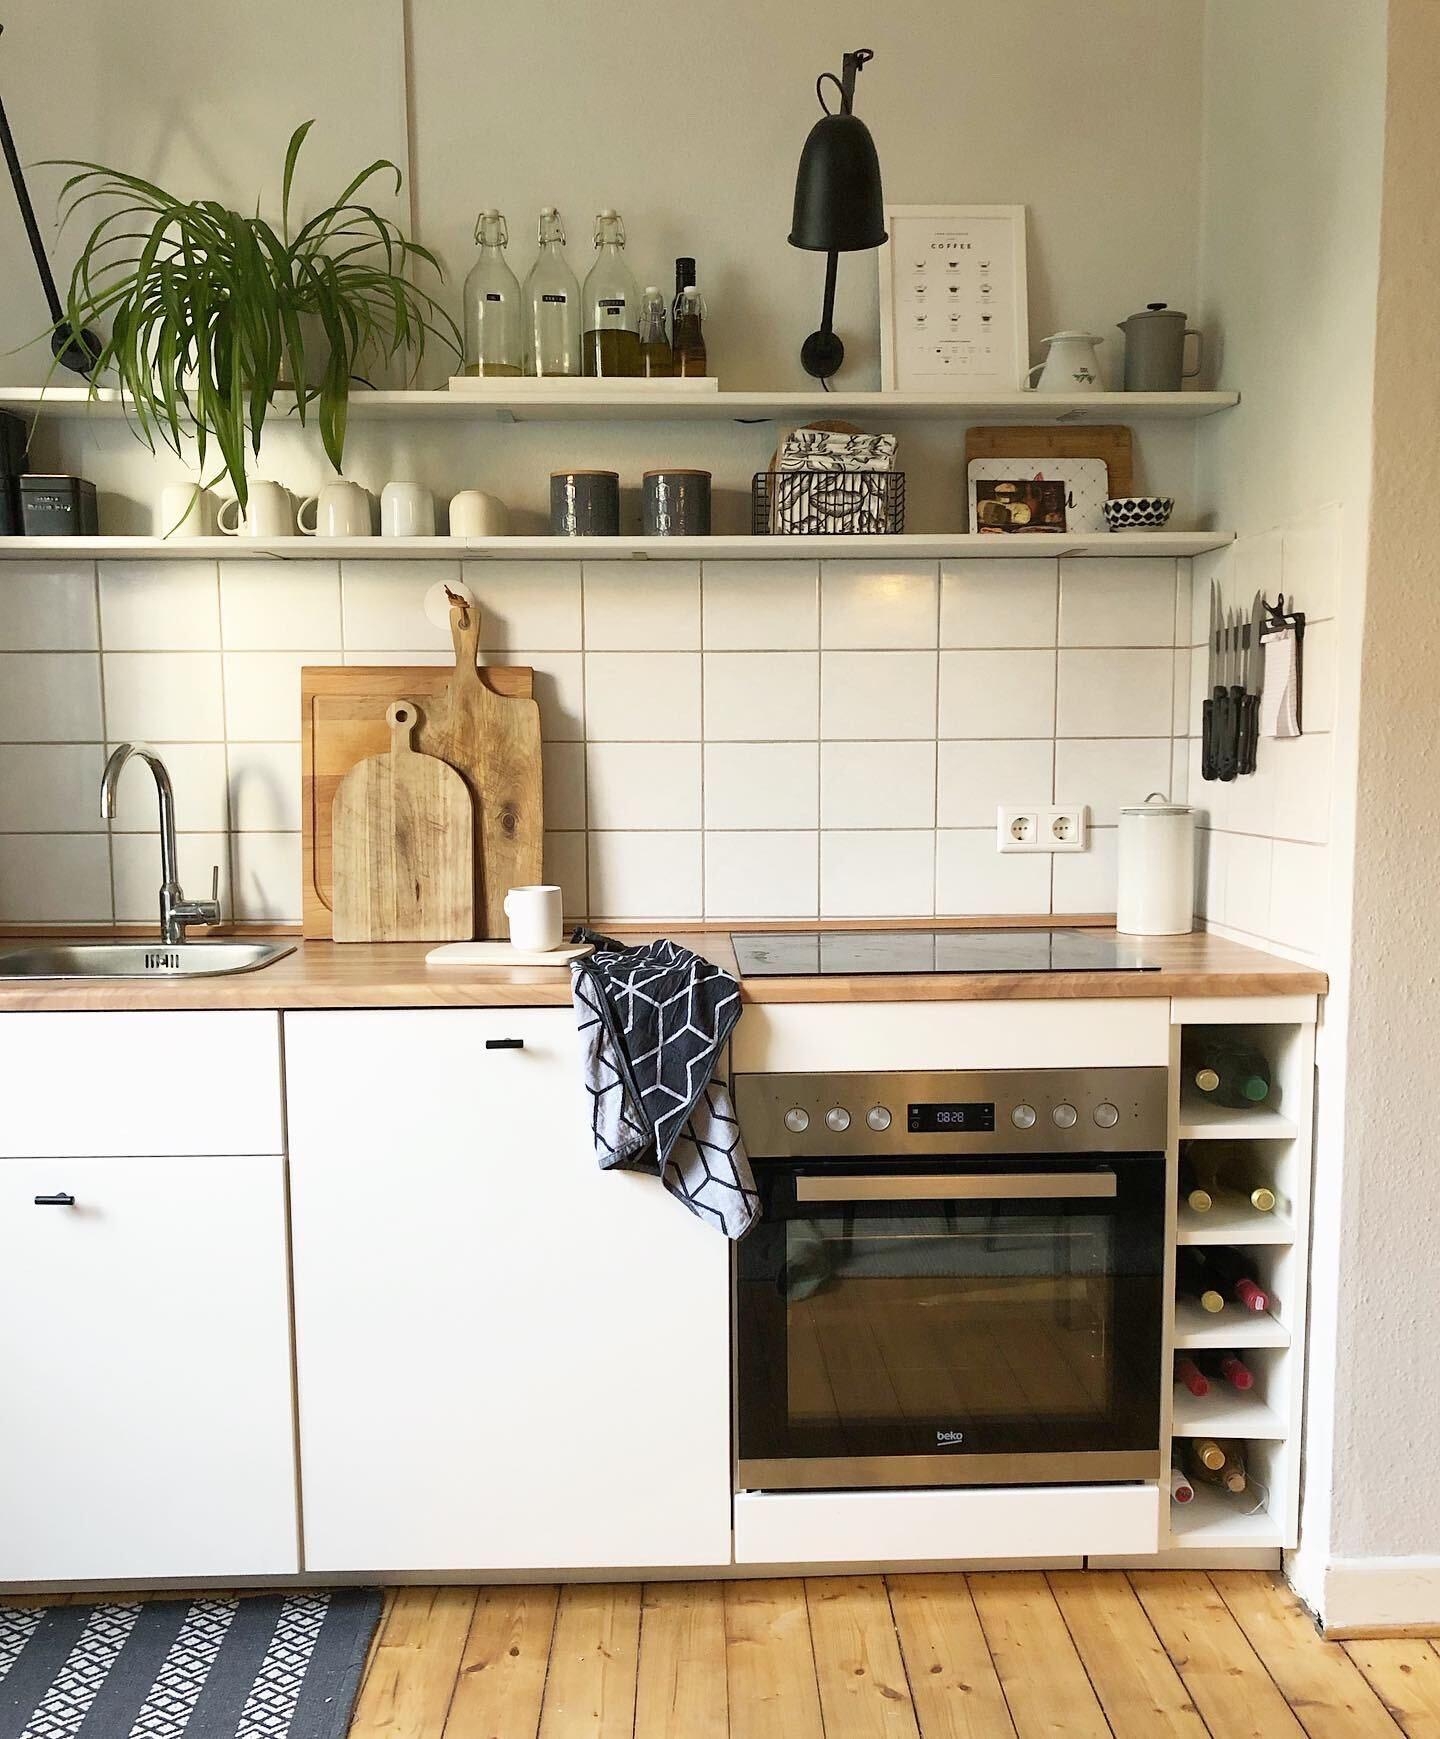 All new in the kitchen #küche #kitchen #kücneliebe #altbau #couchstyle 